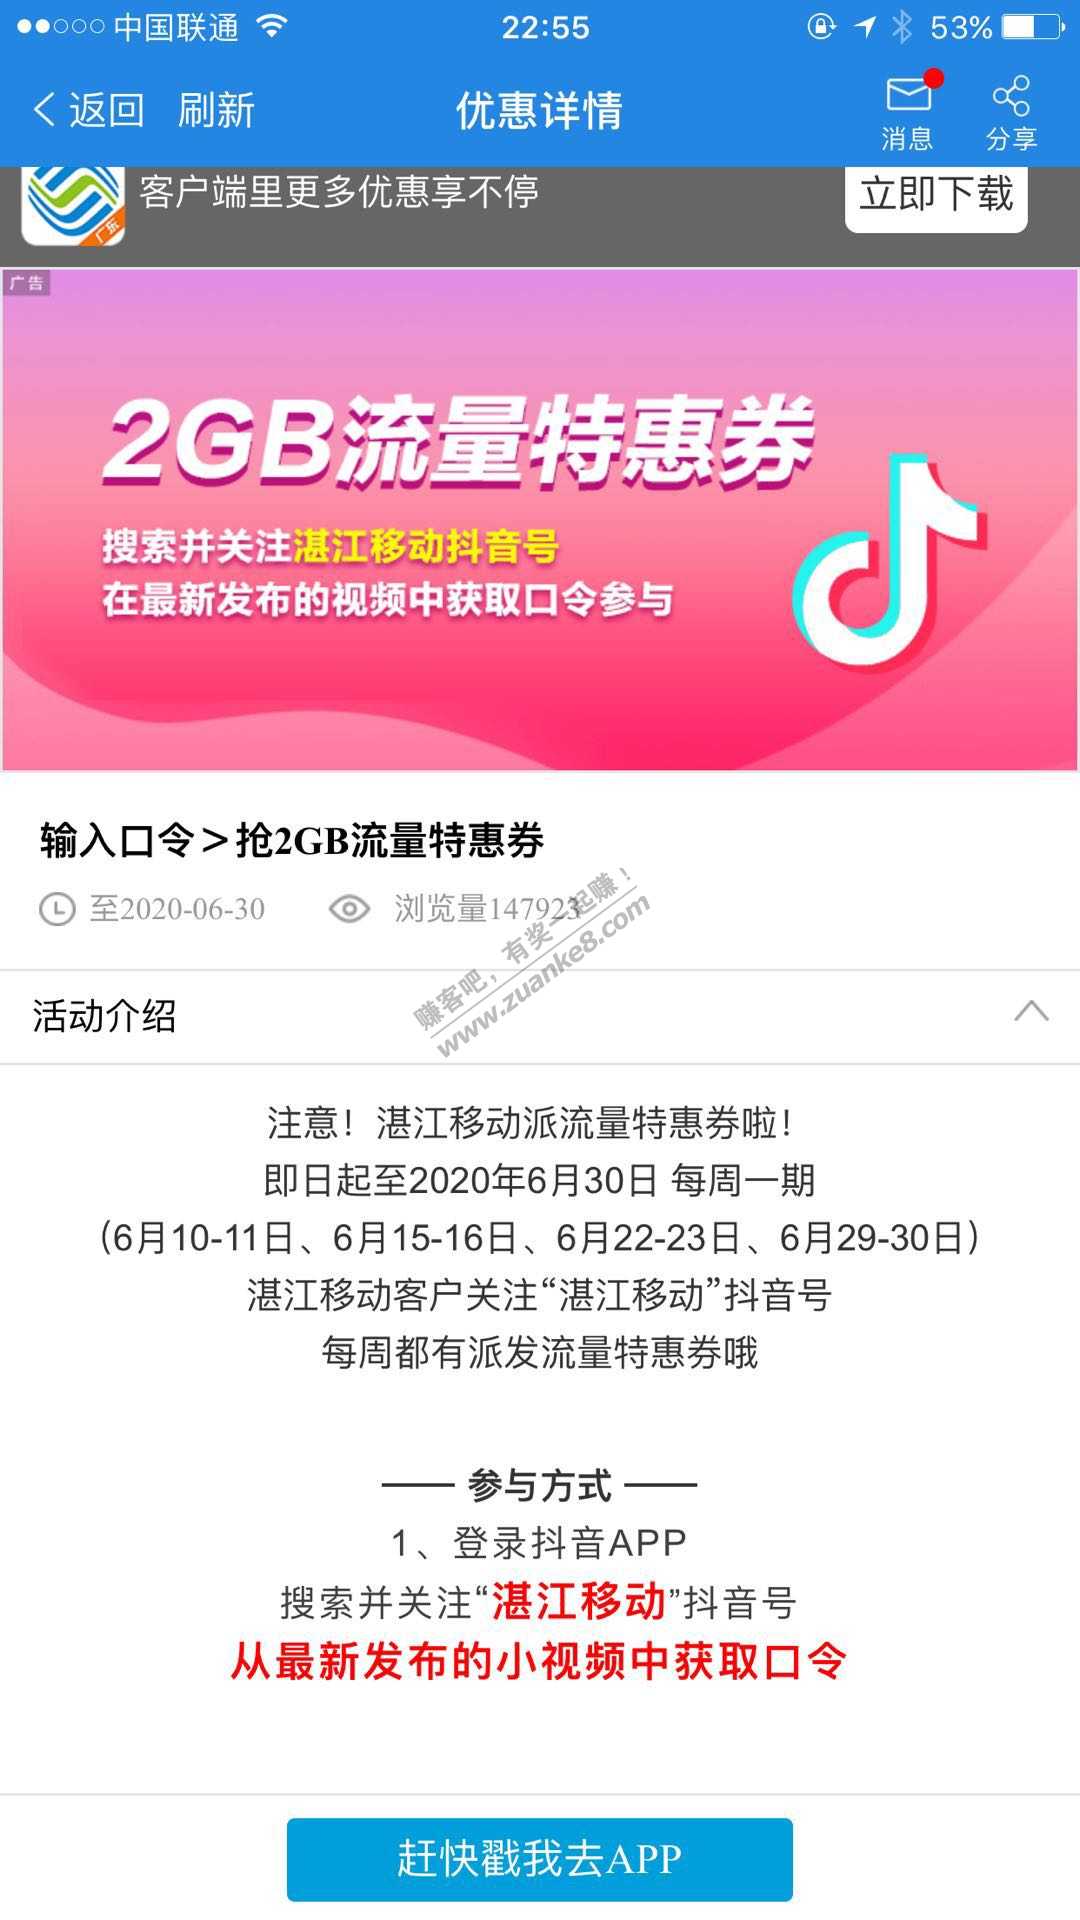 湛江移动 2G流量 快抢 水-惠小助(52huixz.com)